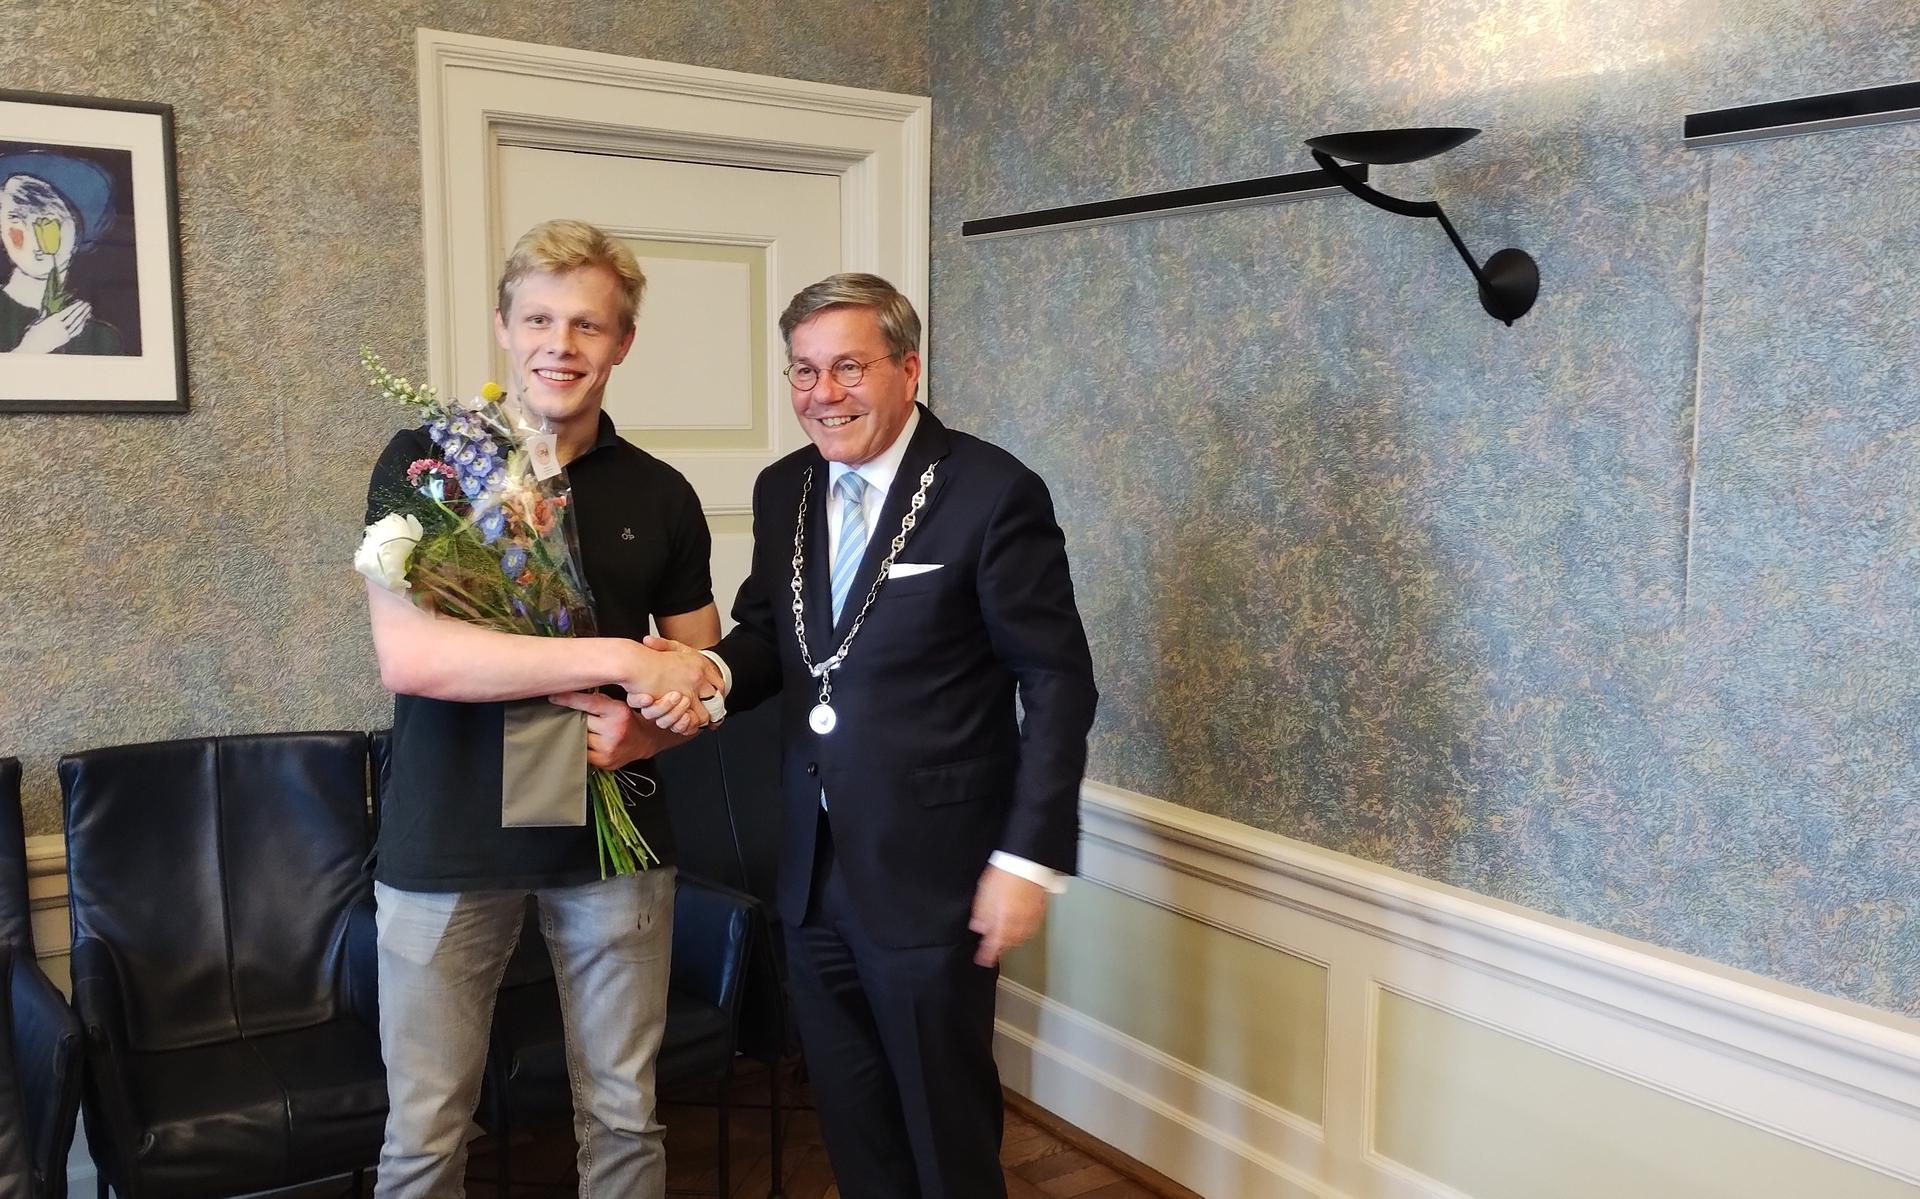 Nederlands kampioen judoka Lars van Oostrum uit Wildervank wordt gehuldigd door burgemeester Berry Link van Veendam